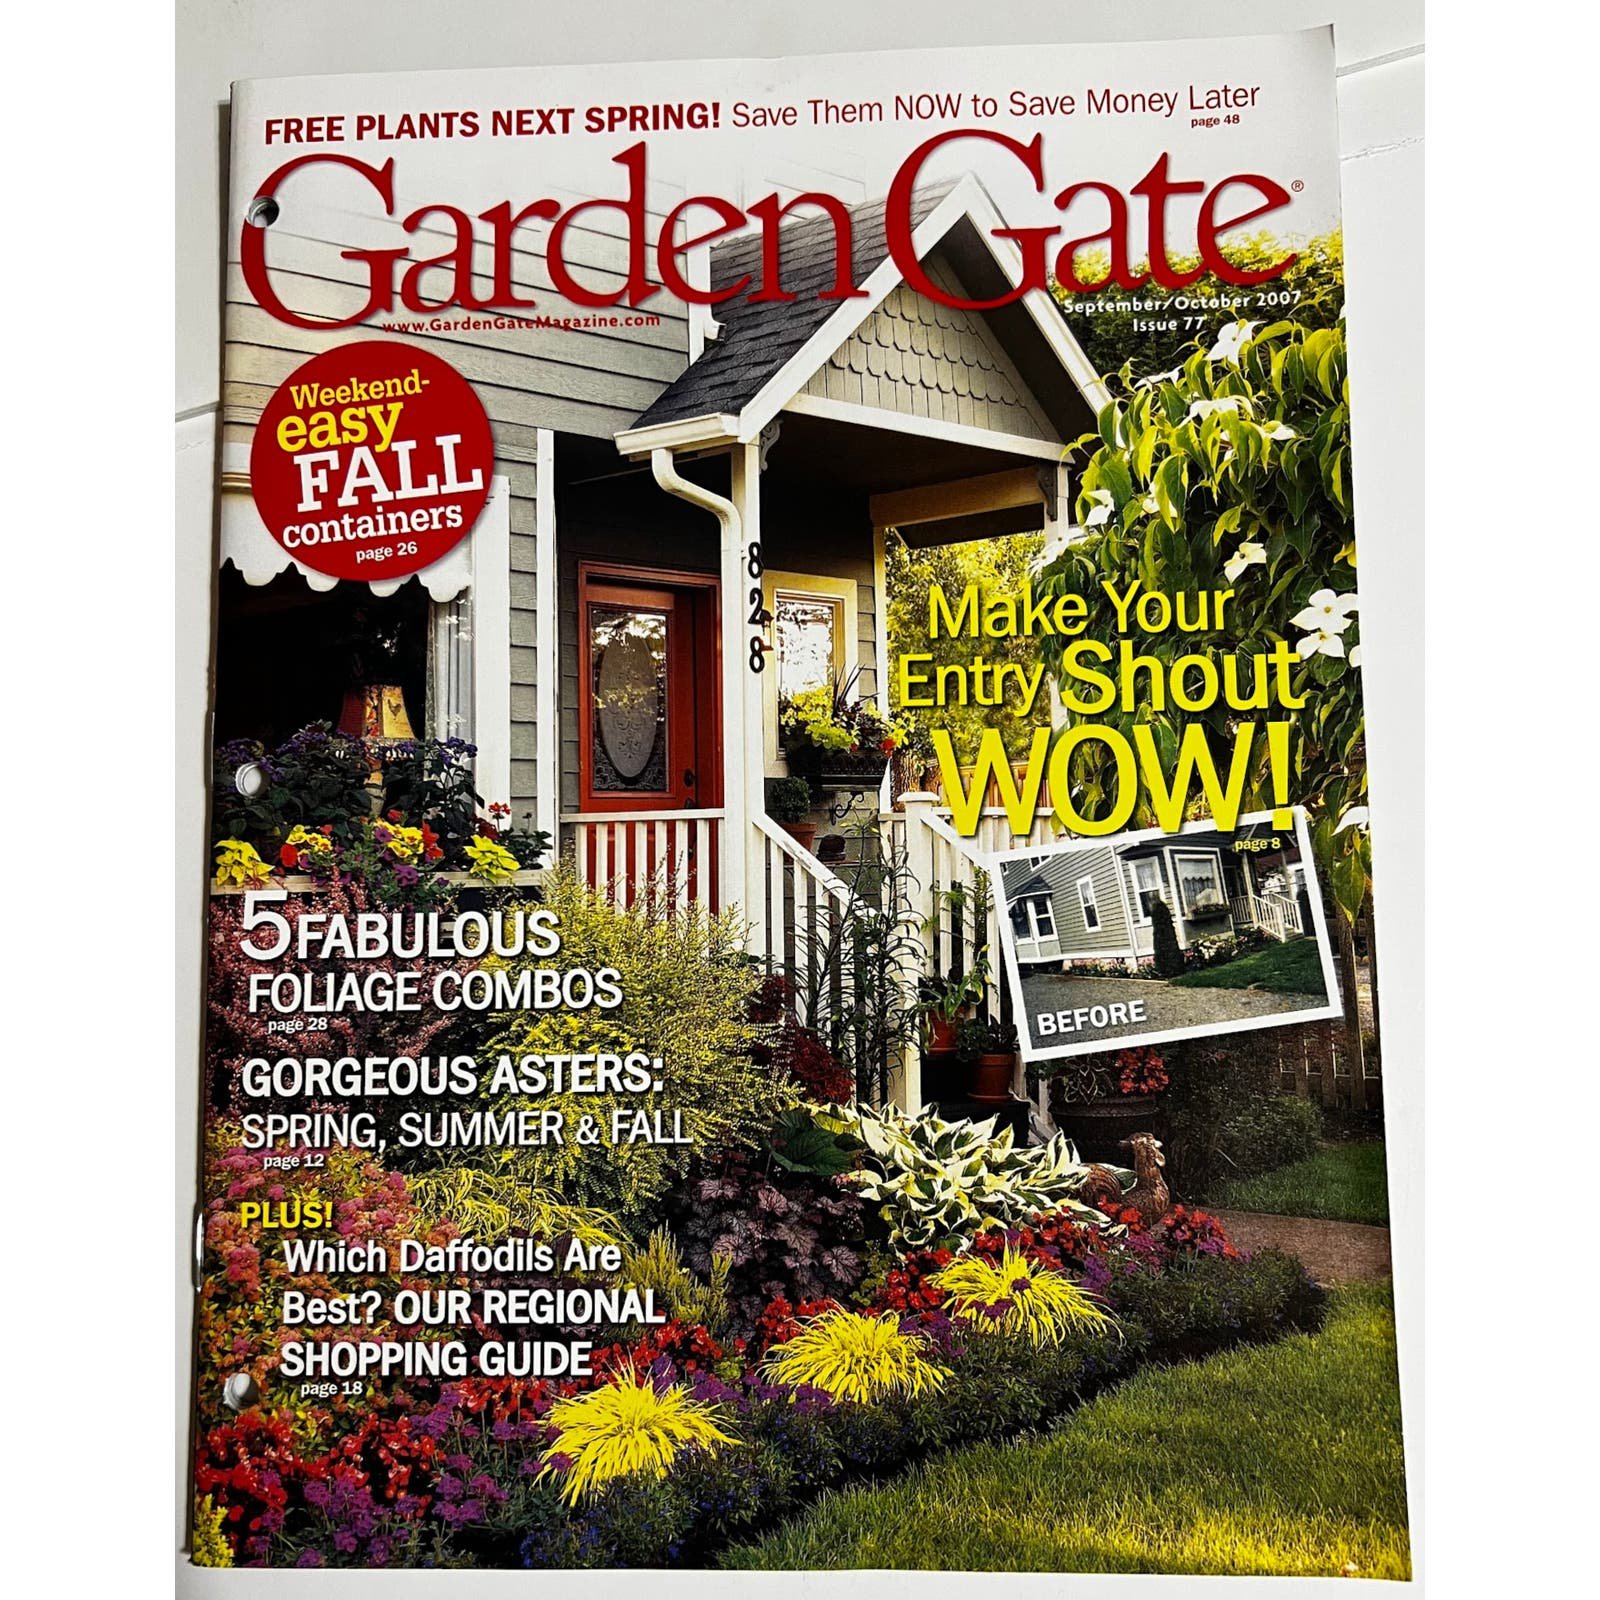 Garden Gate Gardening Back Issues September/October 2007 Issue 77 DOYsTVXVY